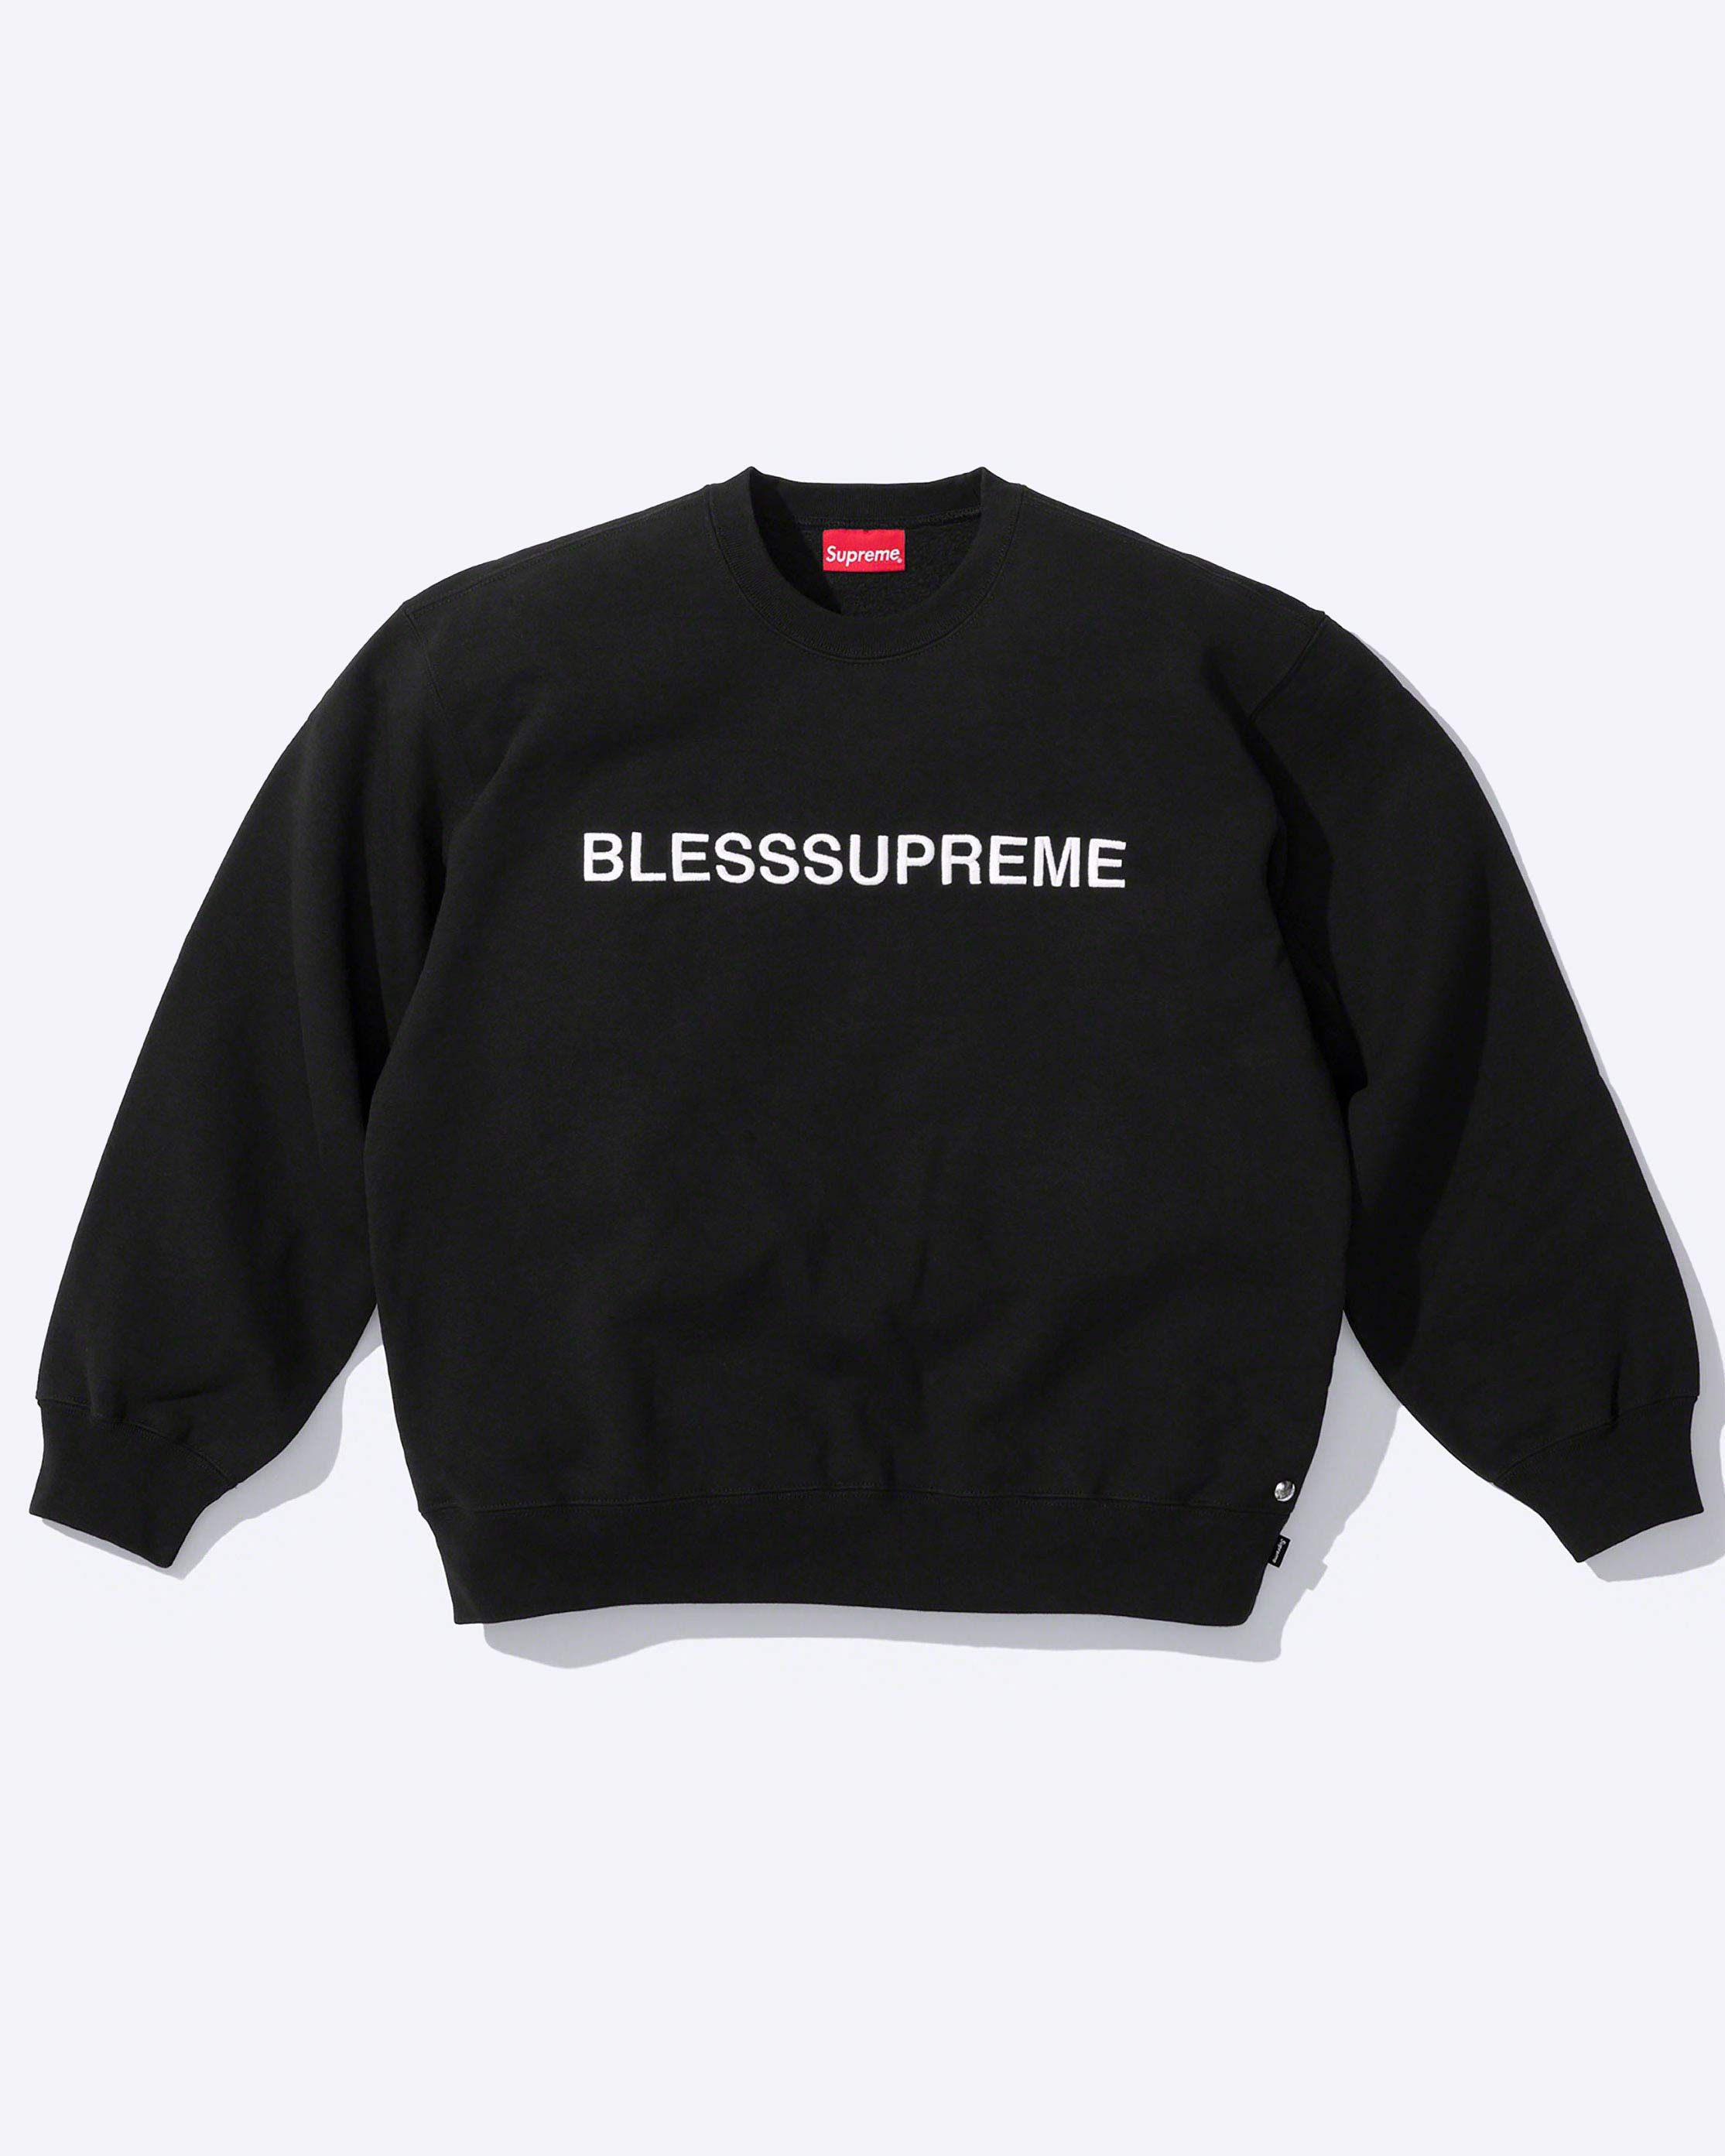 Supreme®/BLESS – Supreme